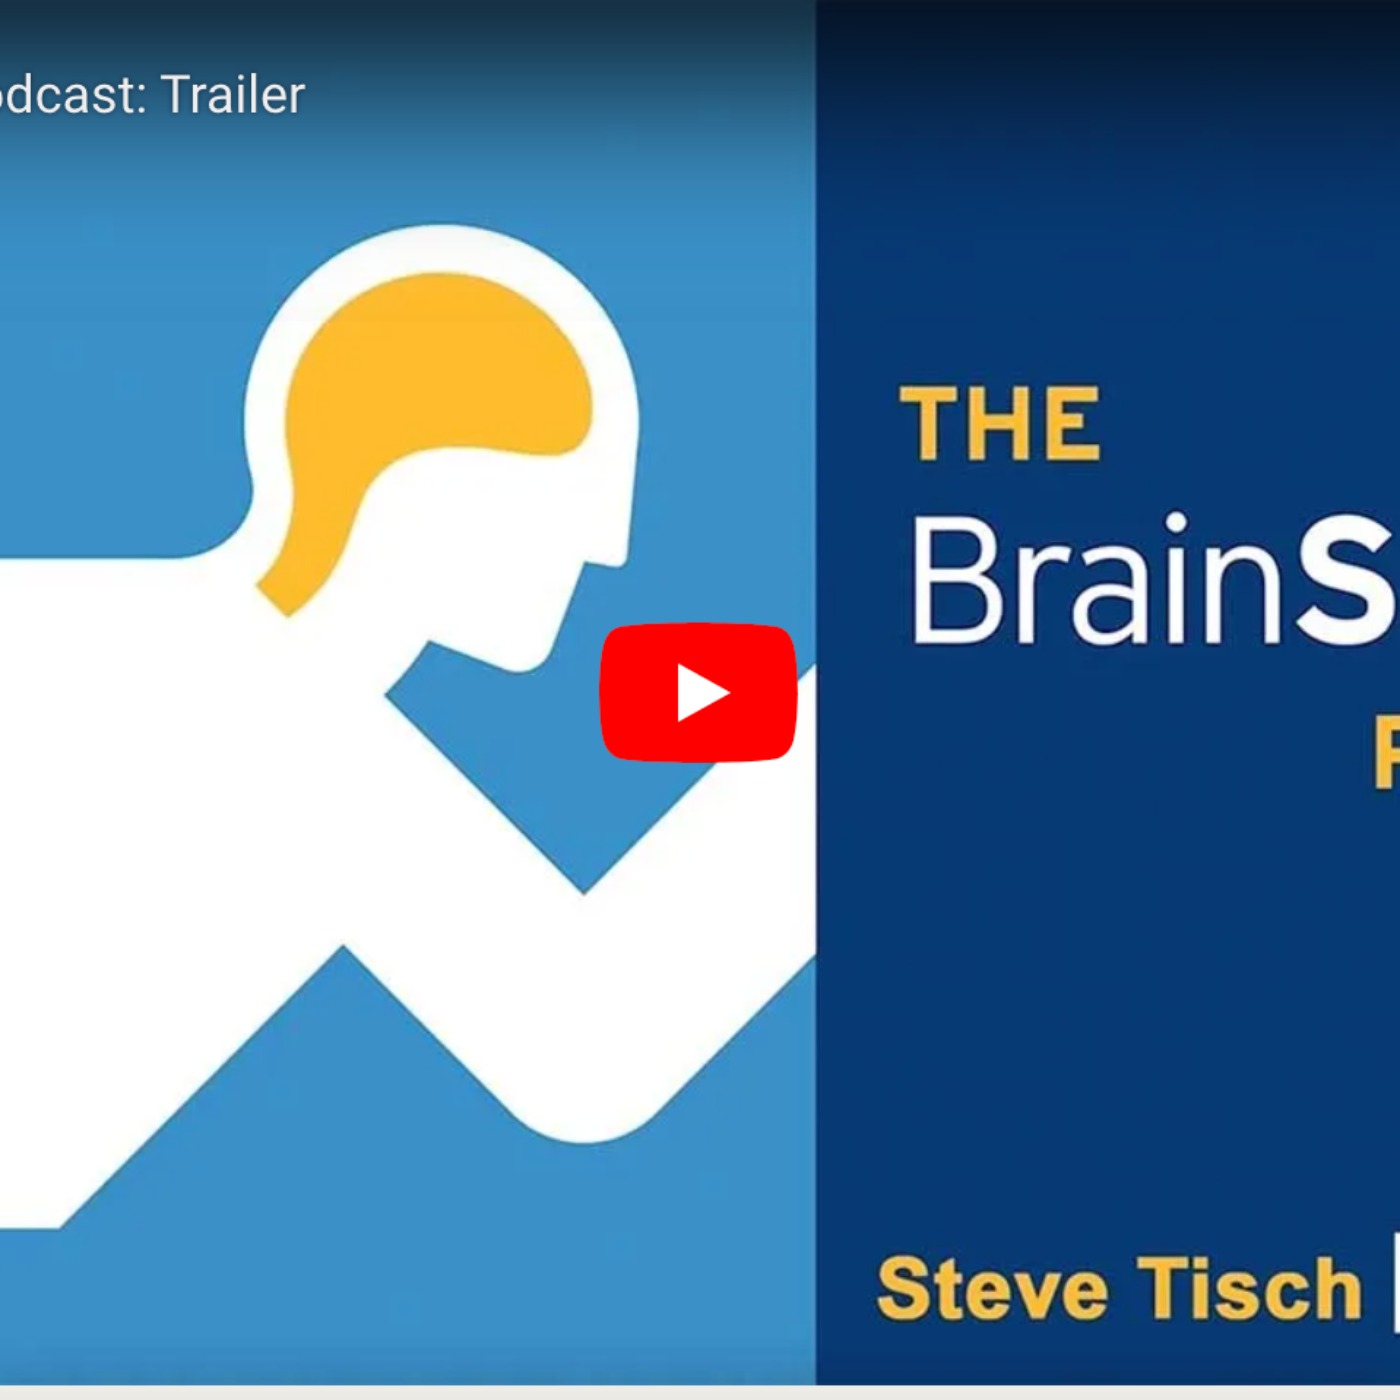 UCLA Steve Tisch BrainSPORT Program & Podcast